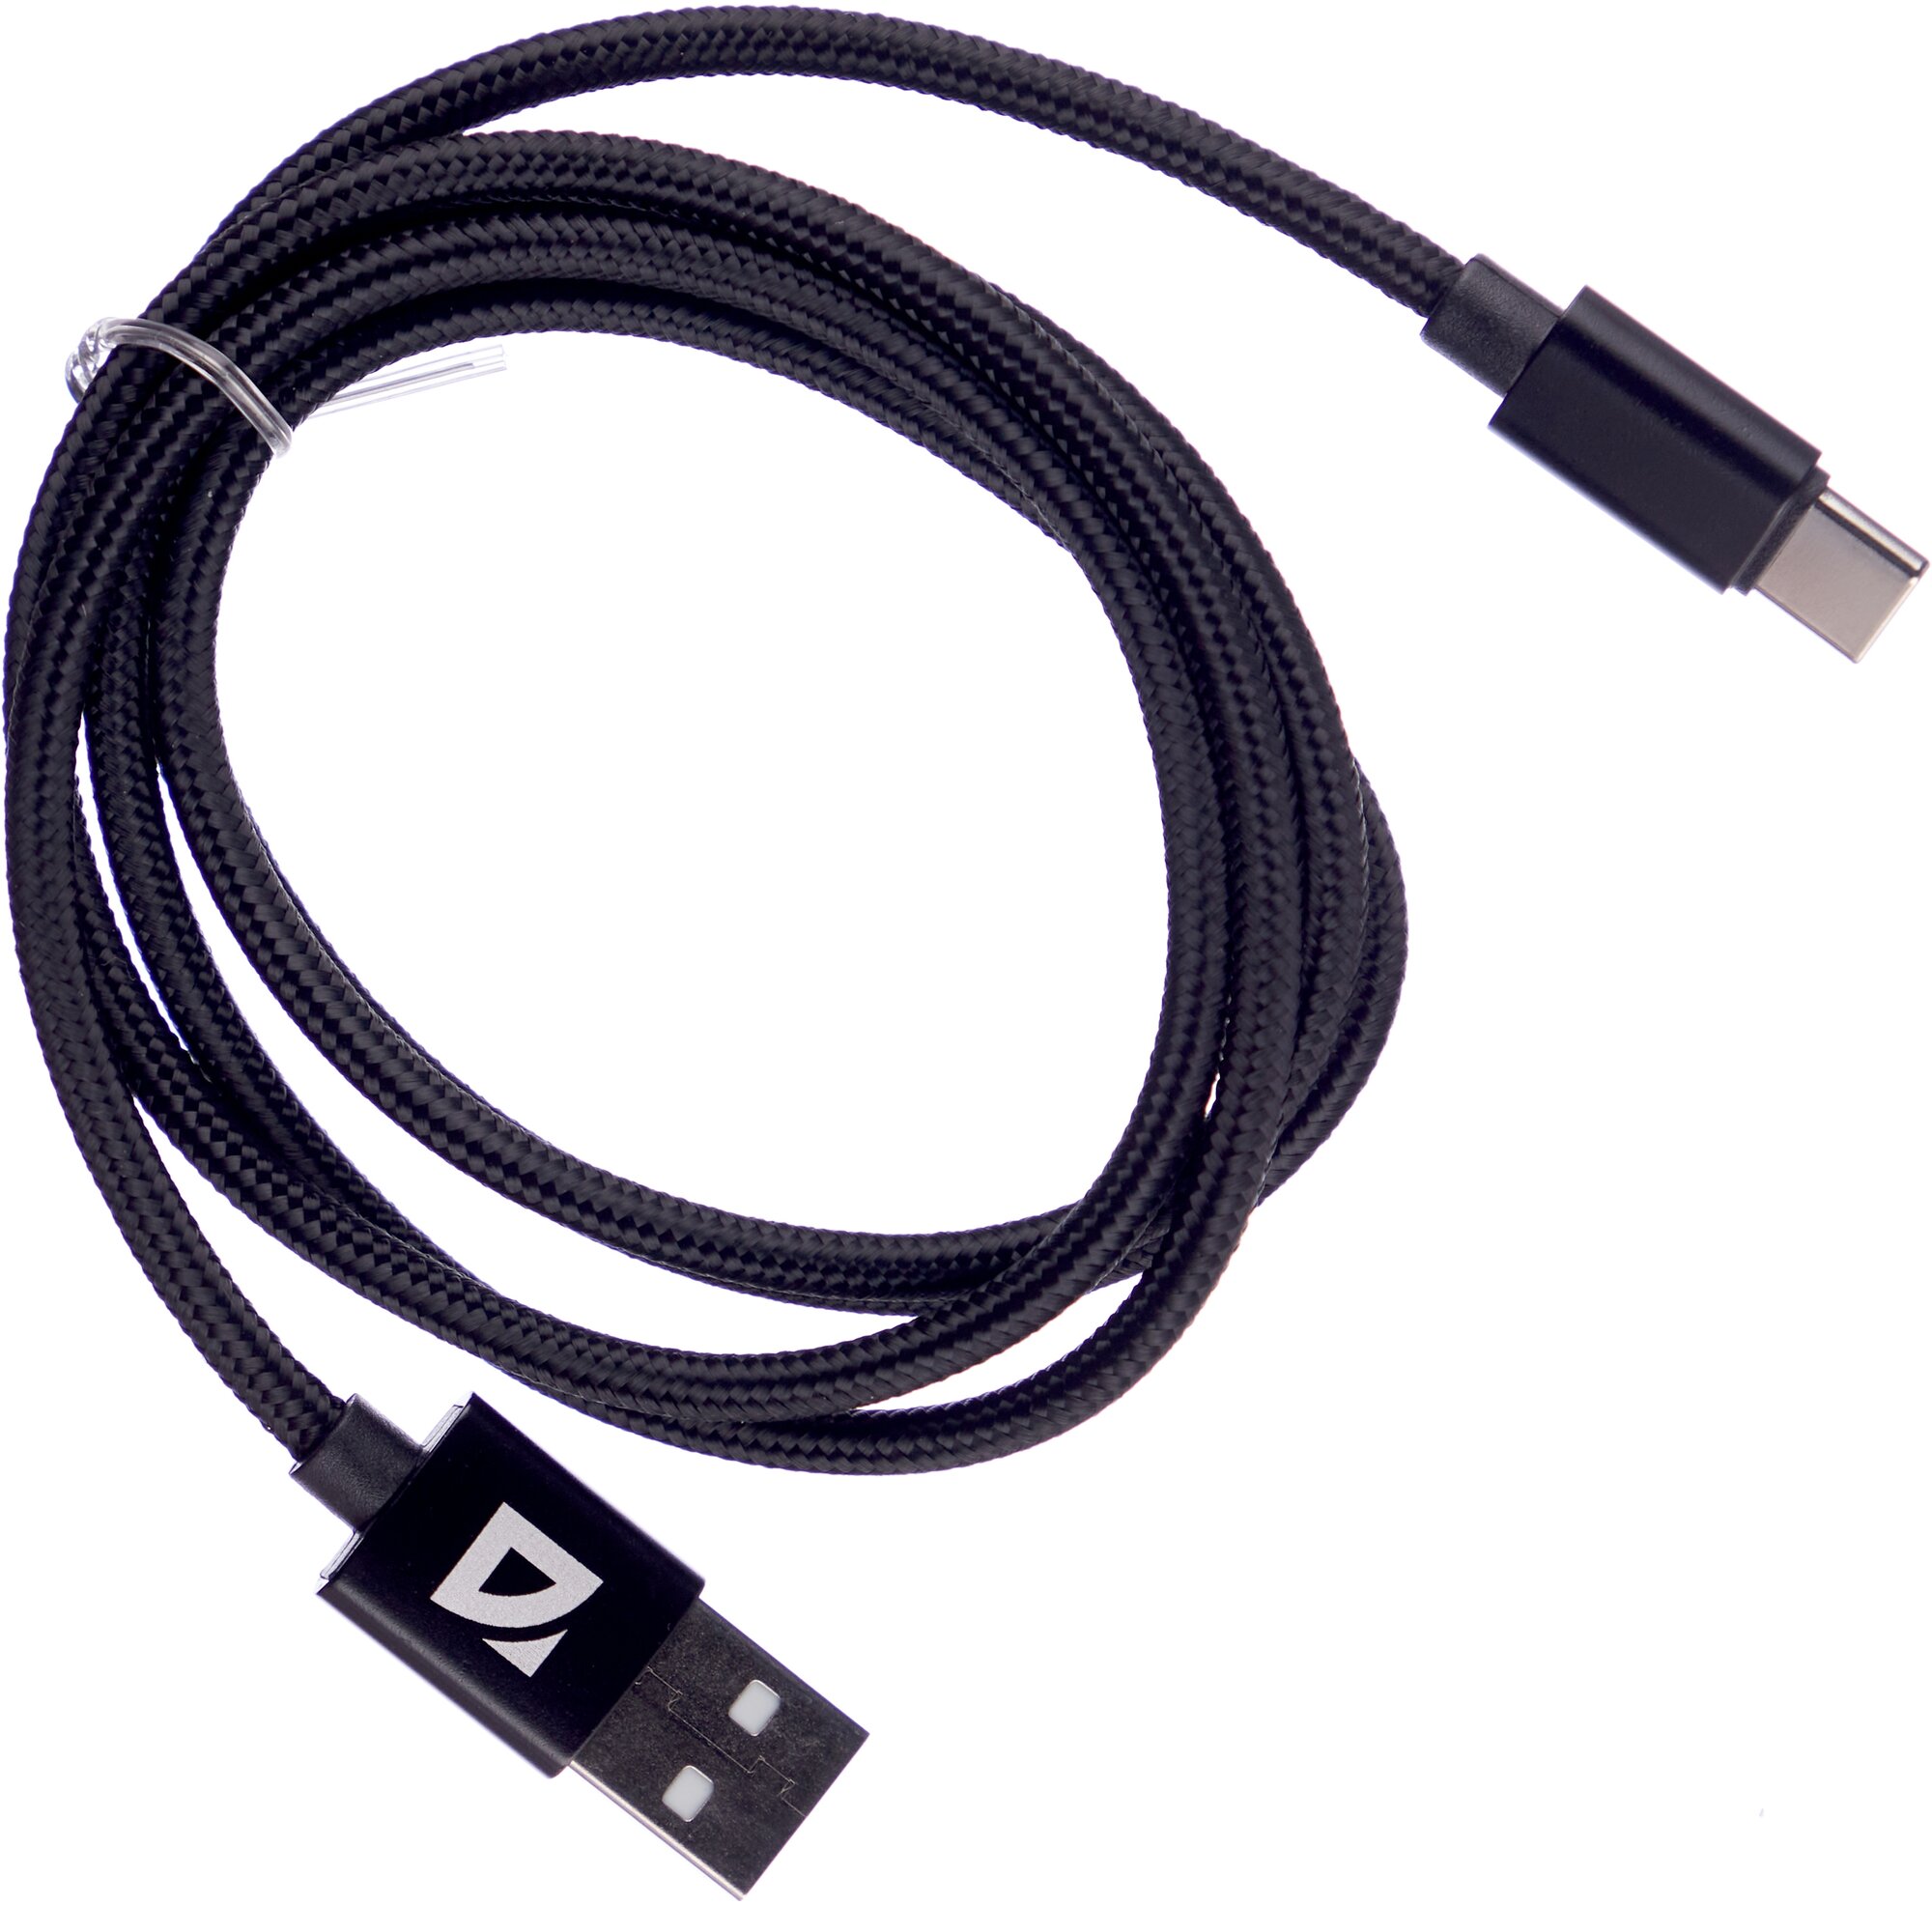 USB кабель Defender F85 TypeC черный, 1м, 1.5А, нейлон, пакет